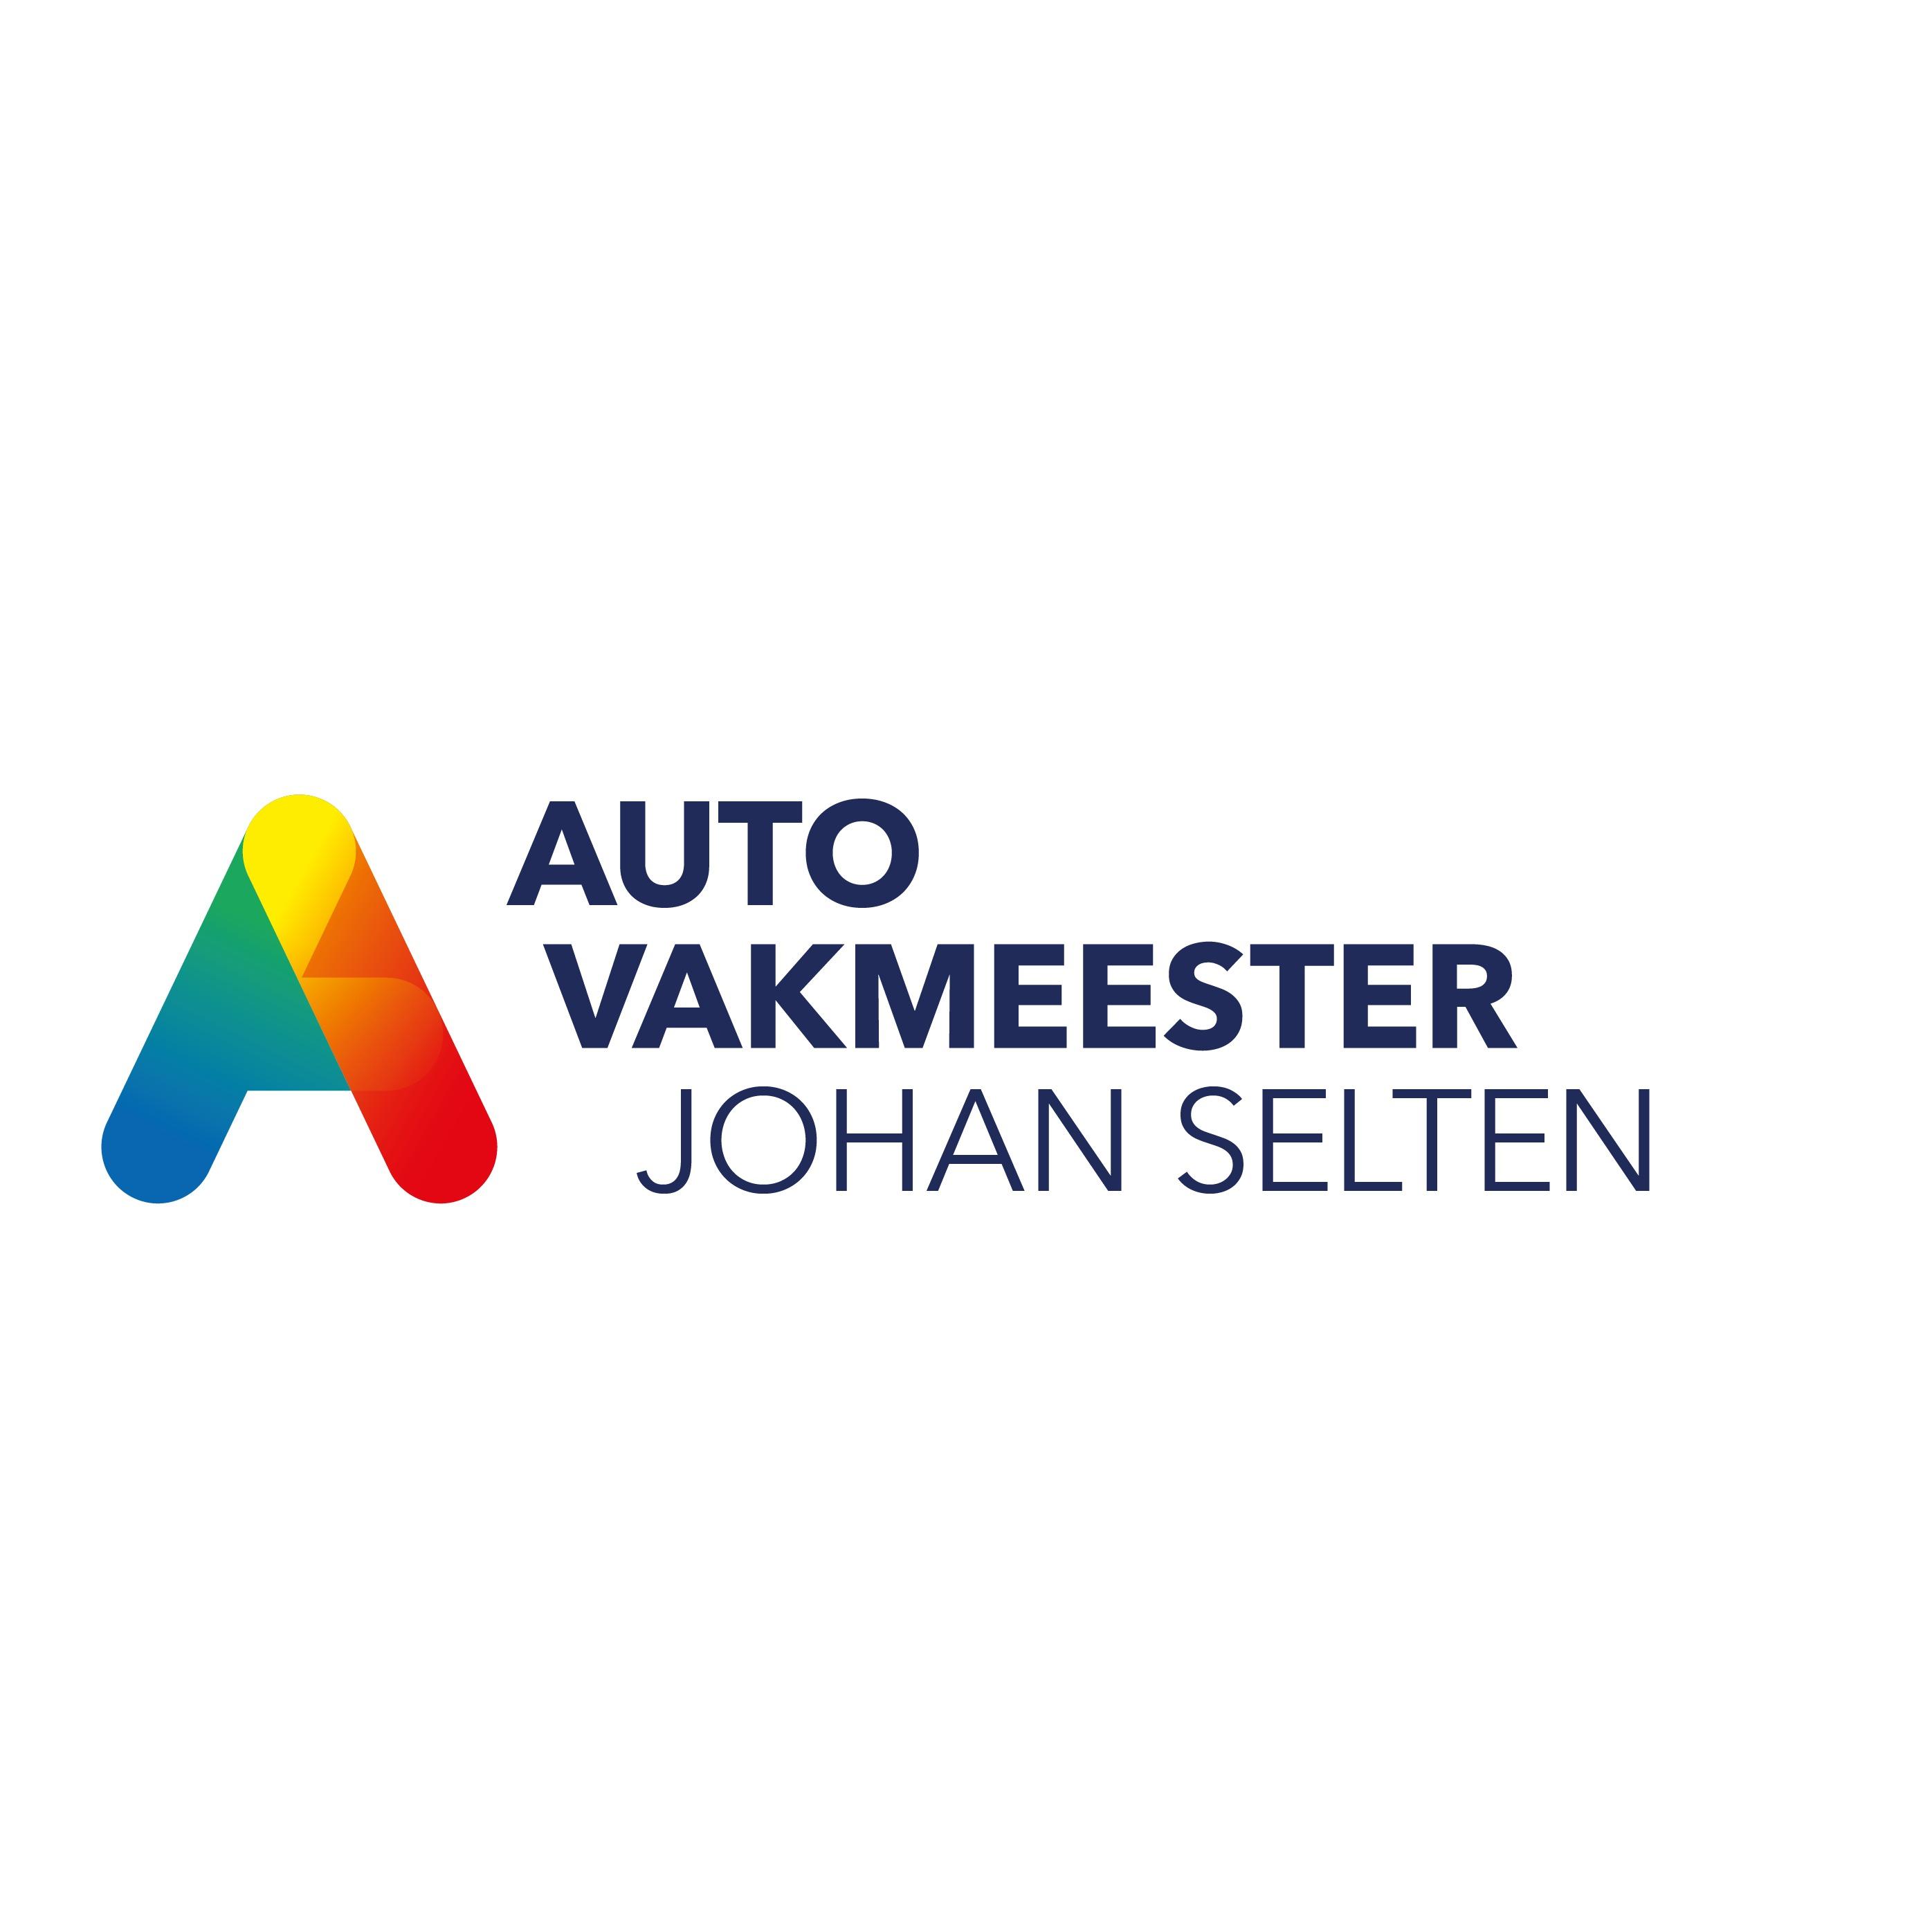 Autovakmeester Johan Selten Logo